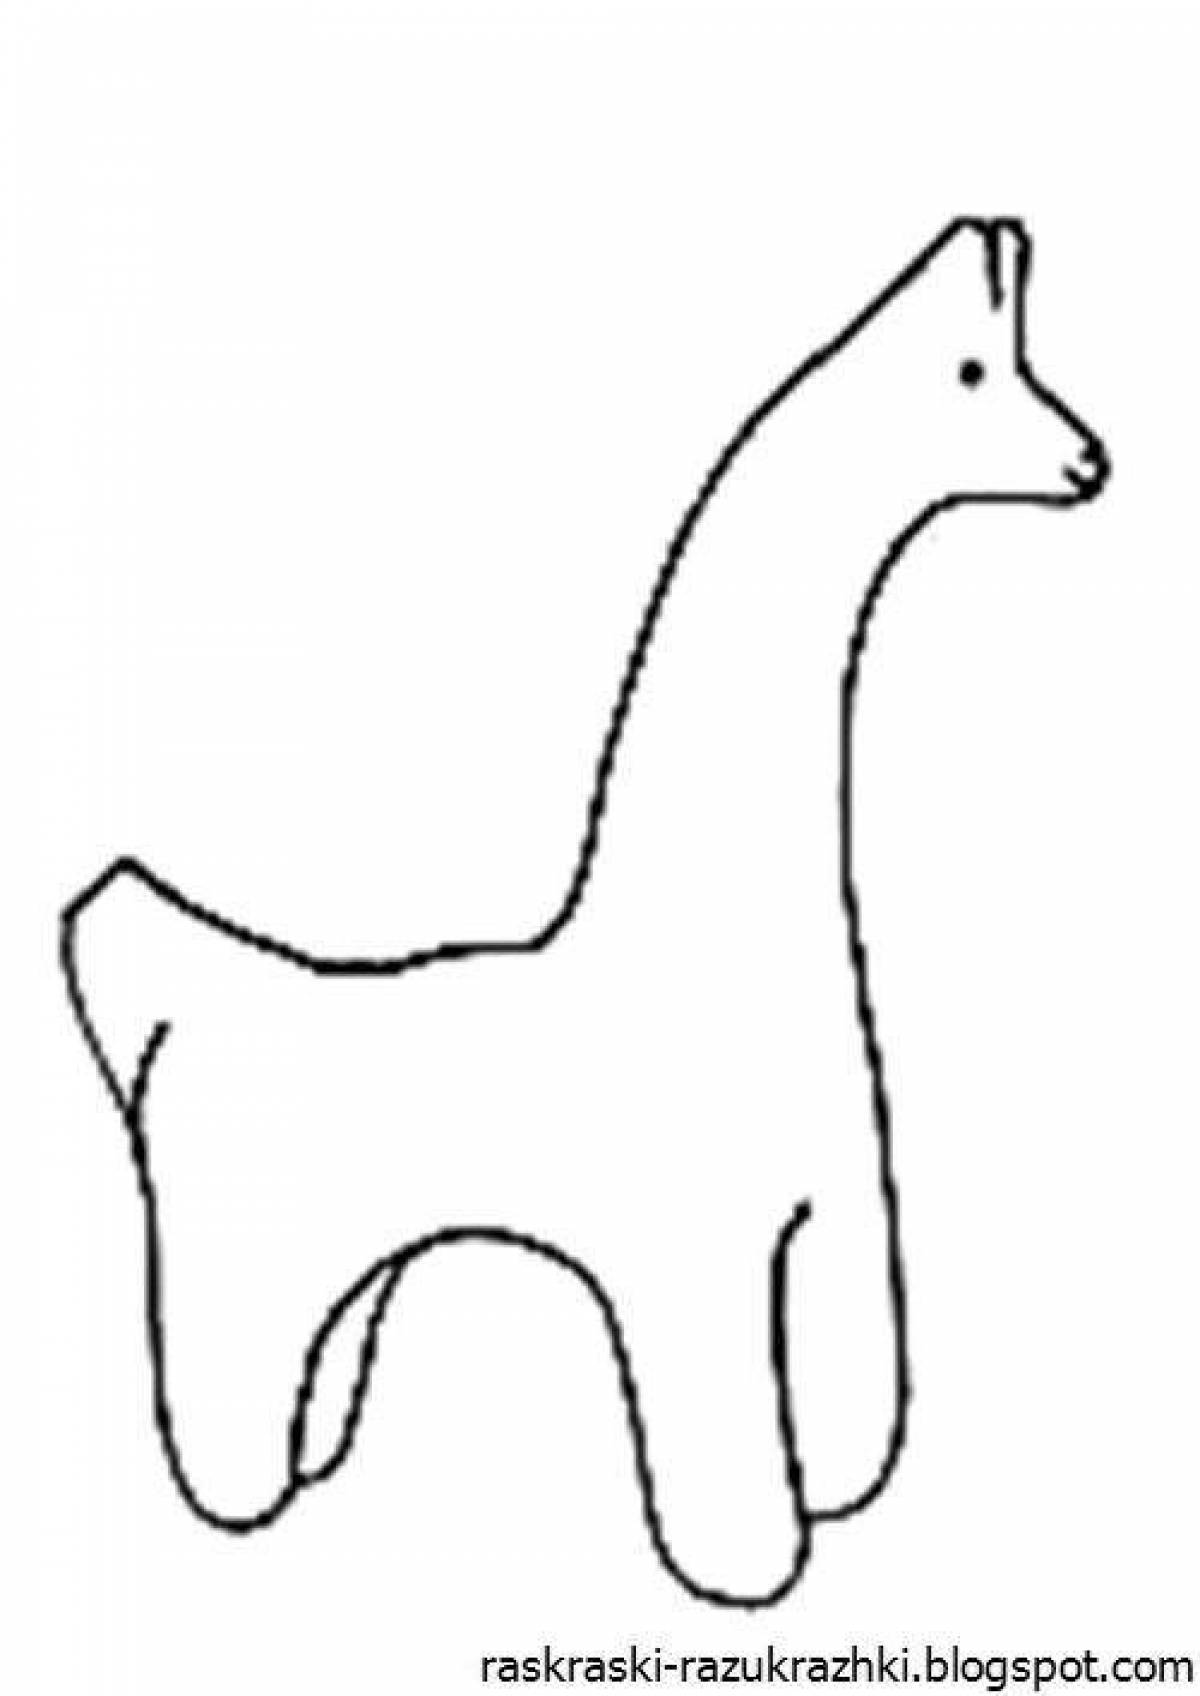 Филимоновская игрушка лошадка раскраска